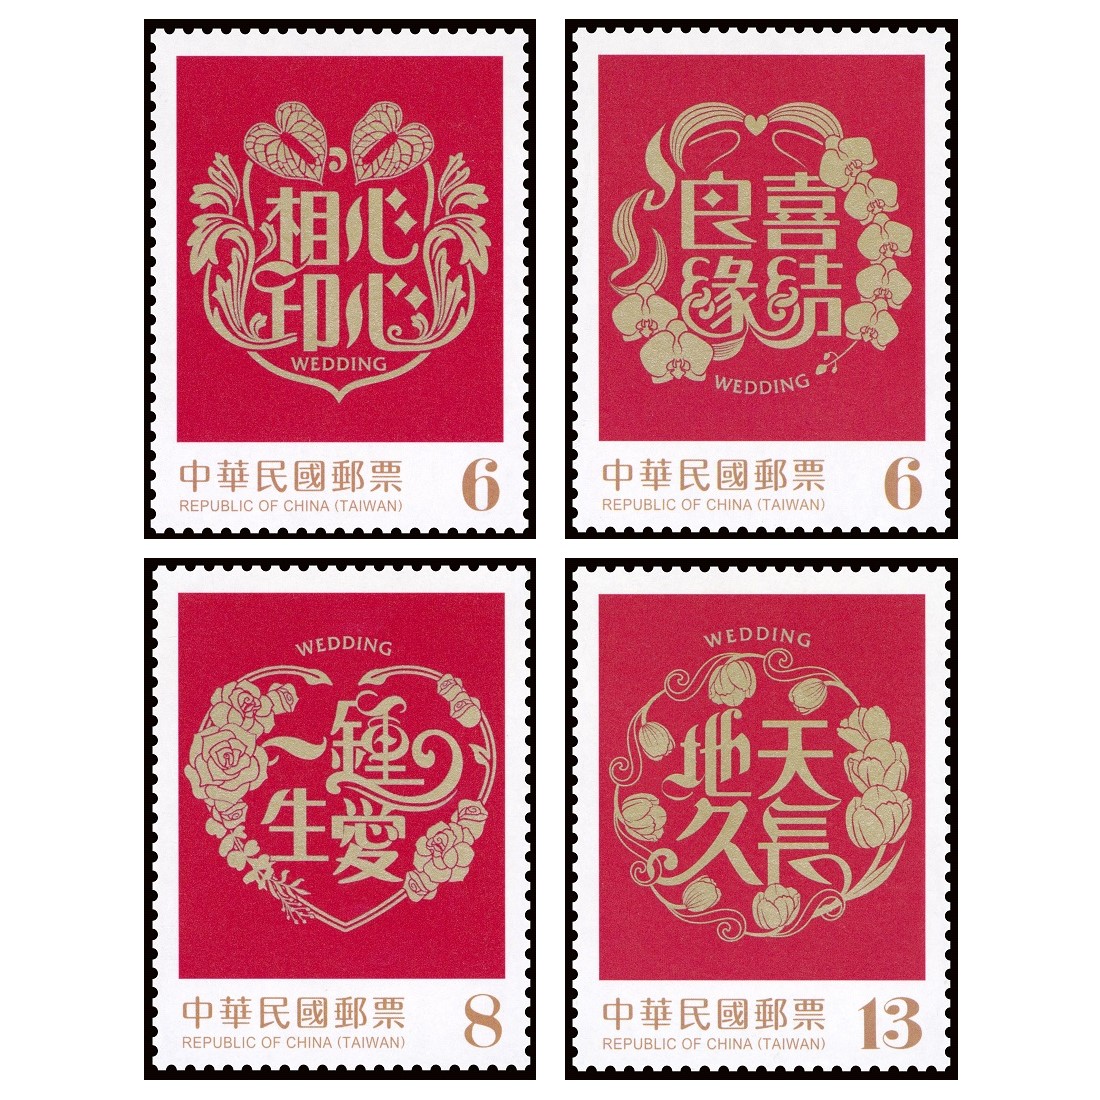 賀喜郵票(111年版)